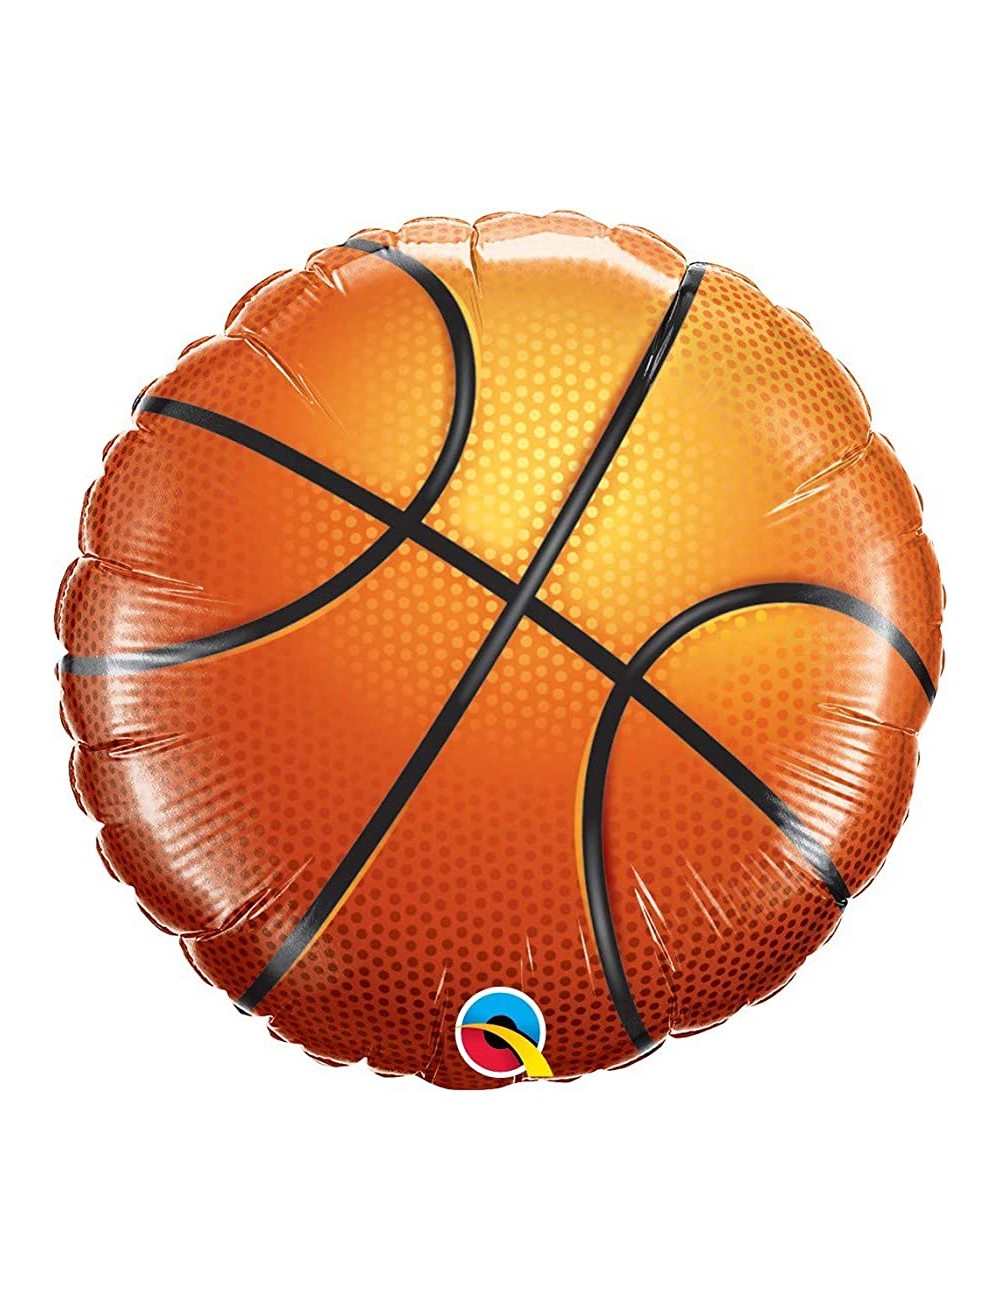 Ballon de Basket en aluminium 91 cm.